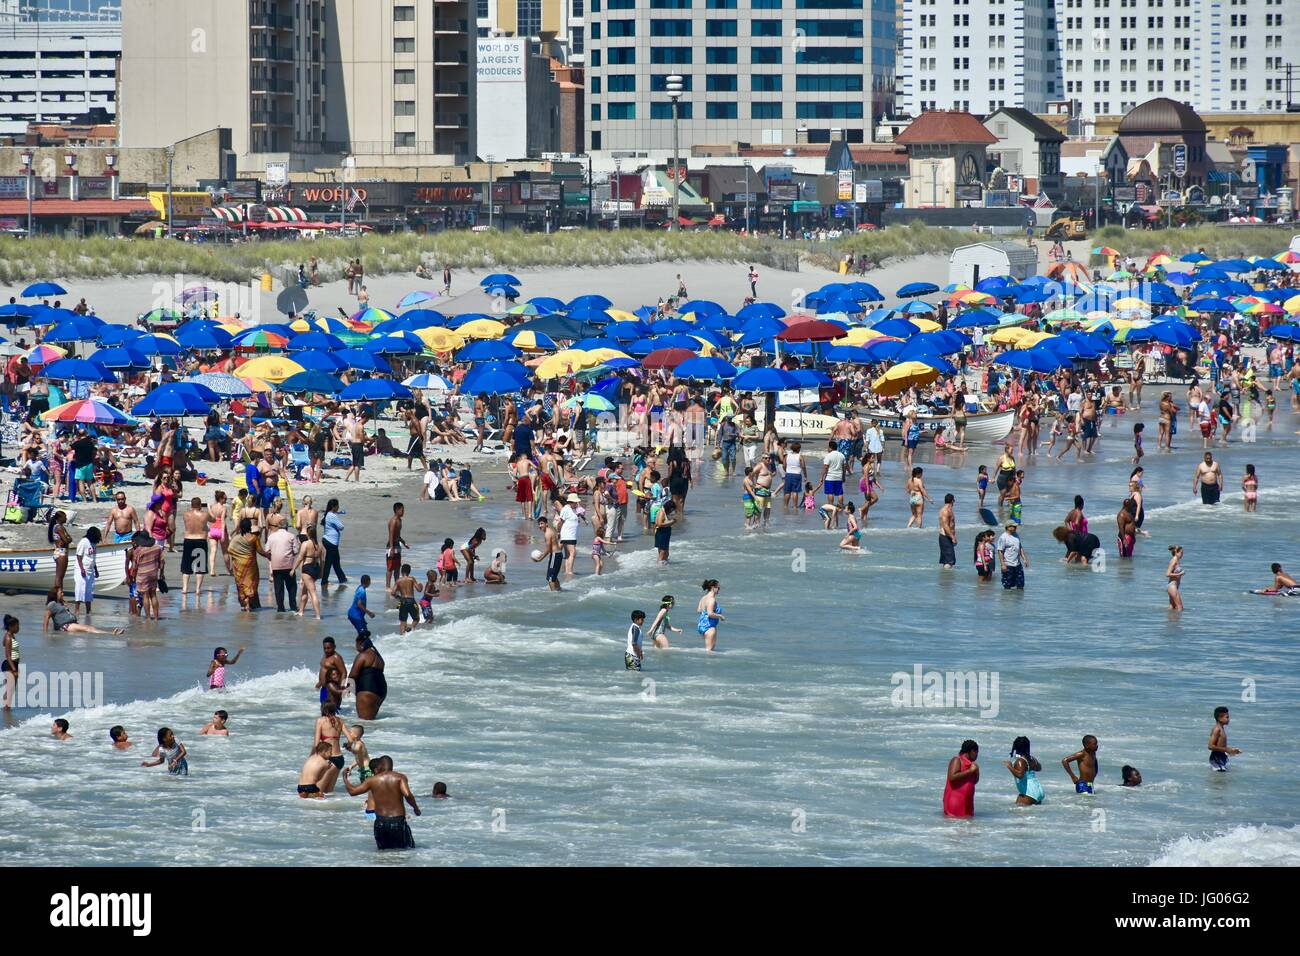 Les touristes et les vacanciers appréciant la belle plage météo à Atlantic City dans le New Jersey sur le week-end du 4 juillet Banque D'Images